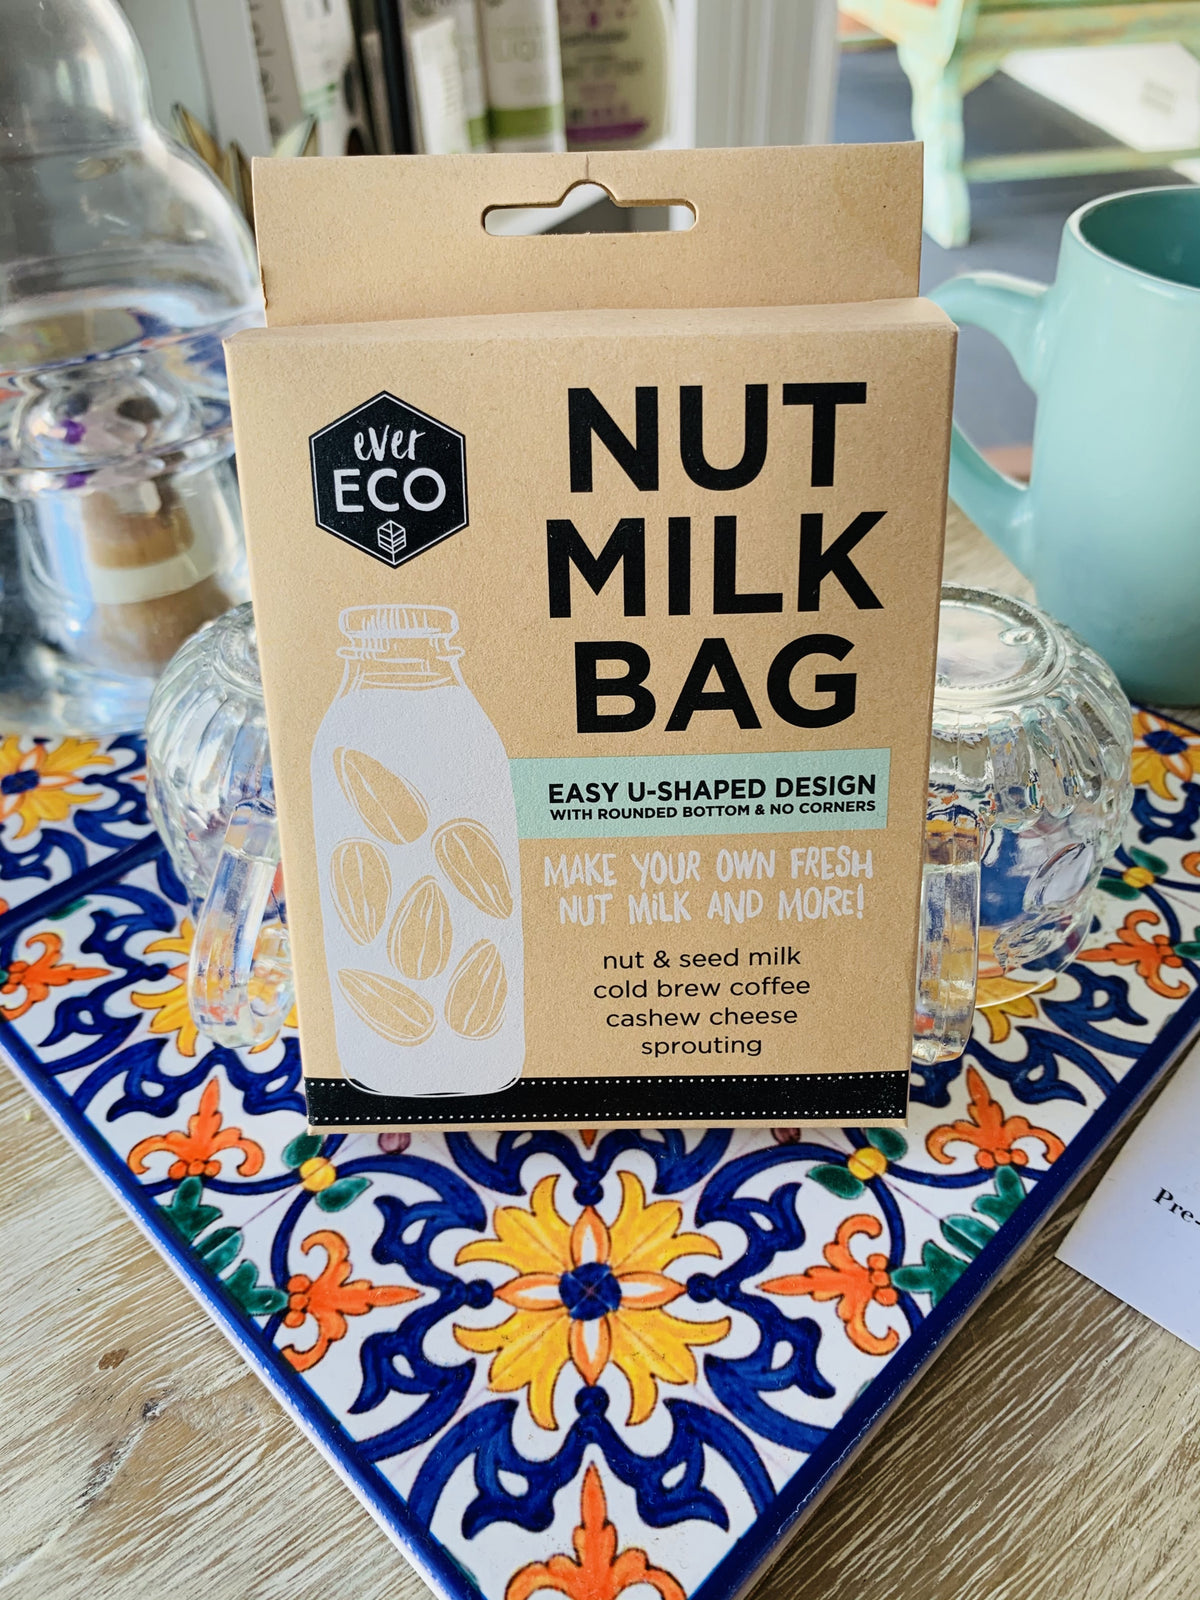 Ever Eco - Nut Milk Bag